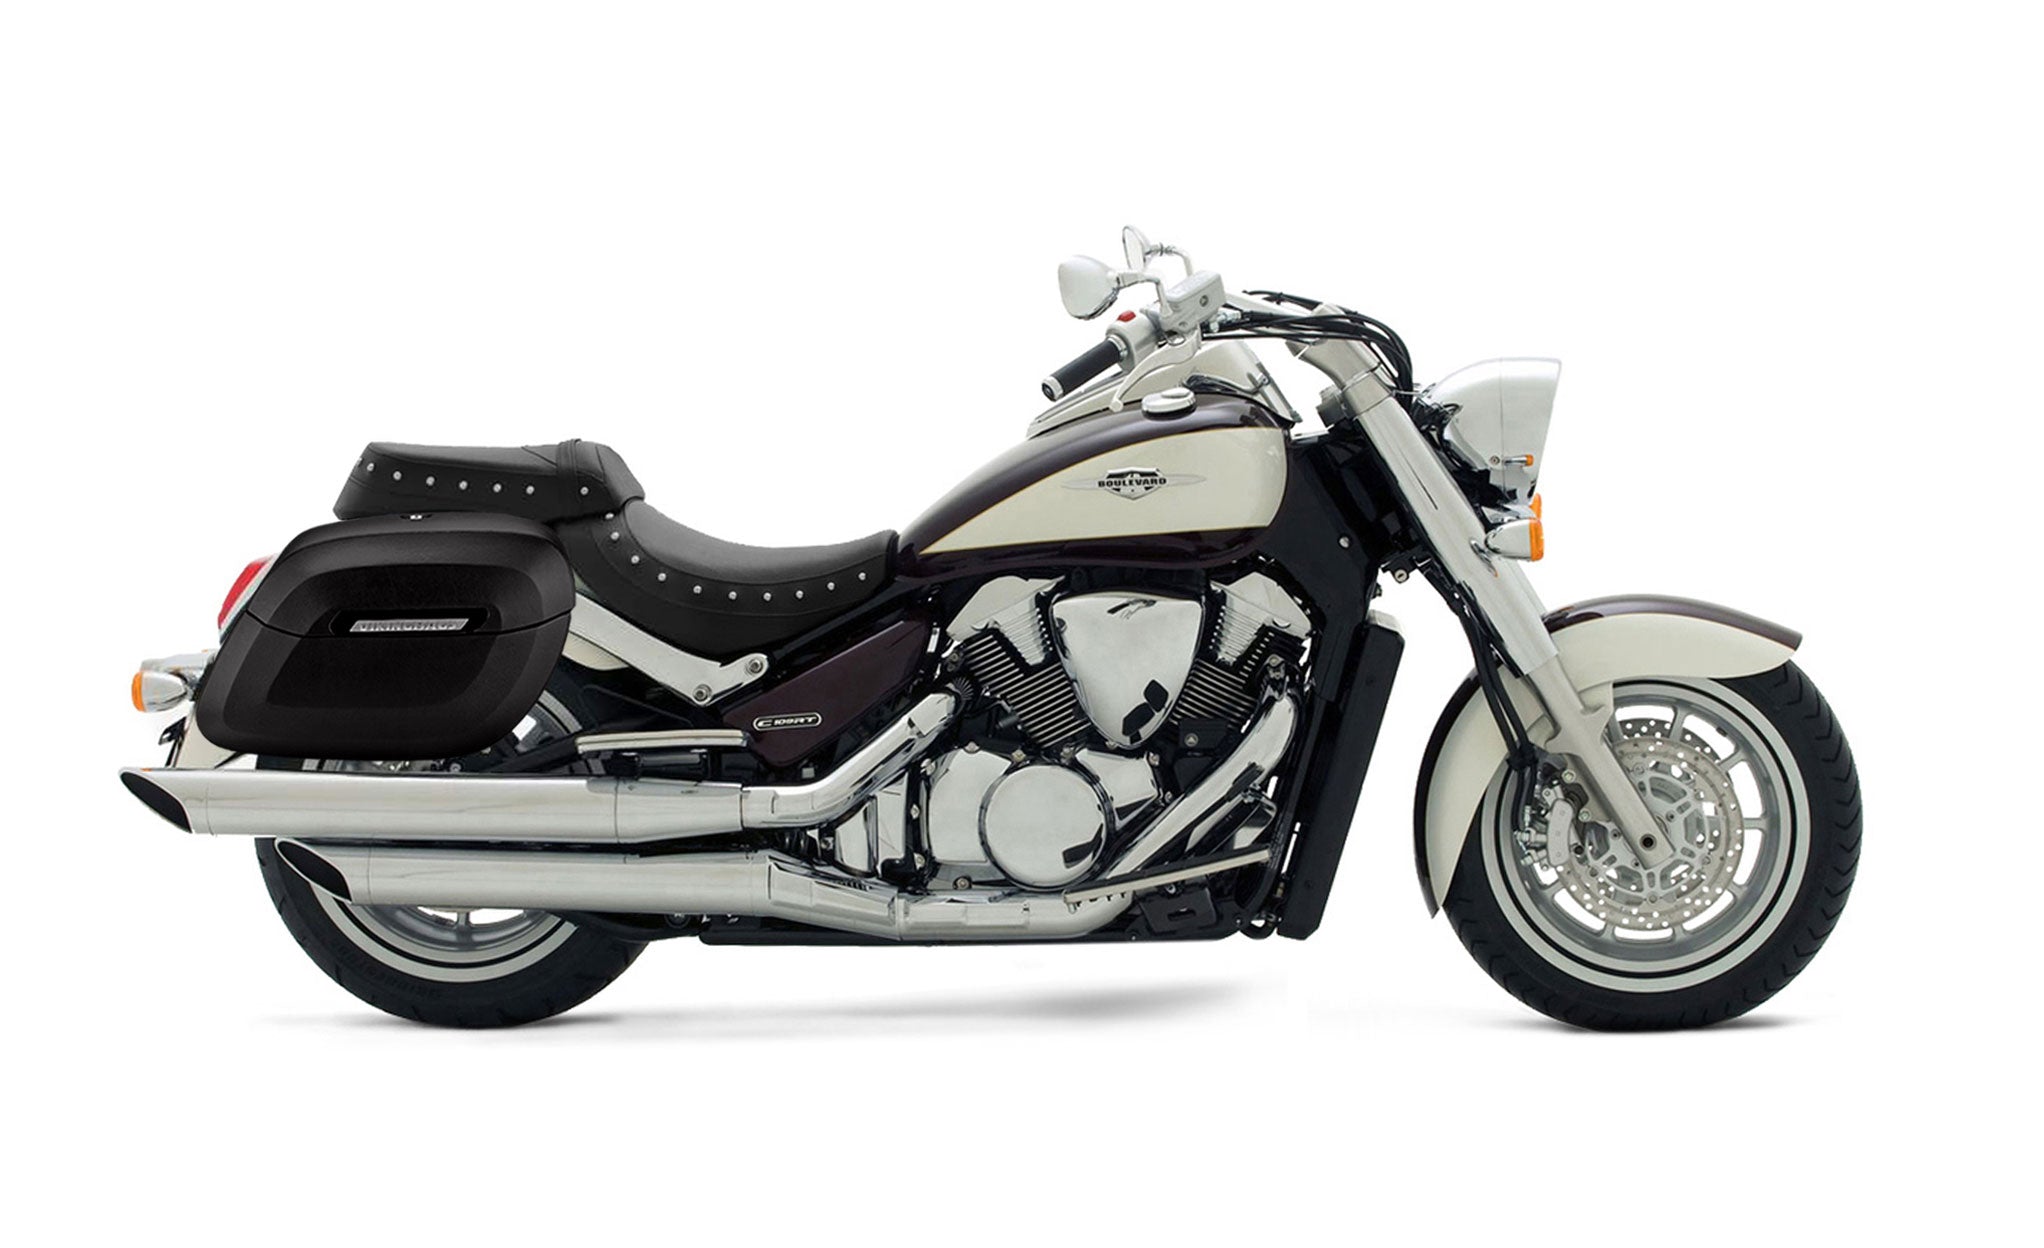 Viking Lamellar Raven Extra Large Suzuki Boulevard C109 Matte Motorcycle Hard Saddlebags on Bike Photo @expand